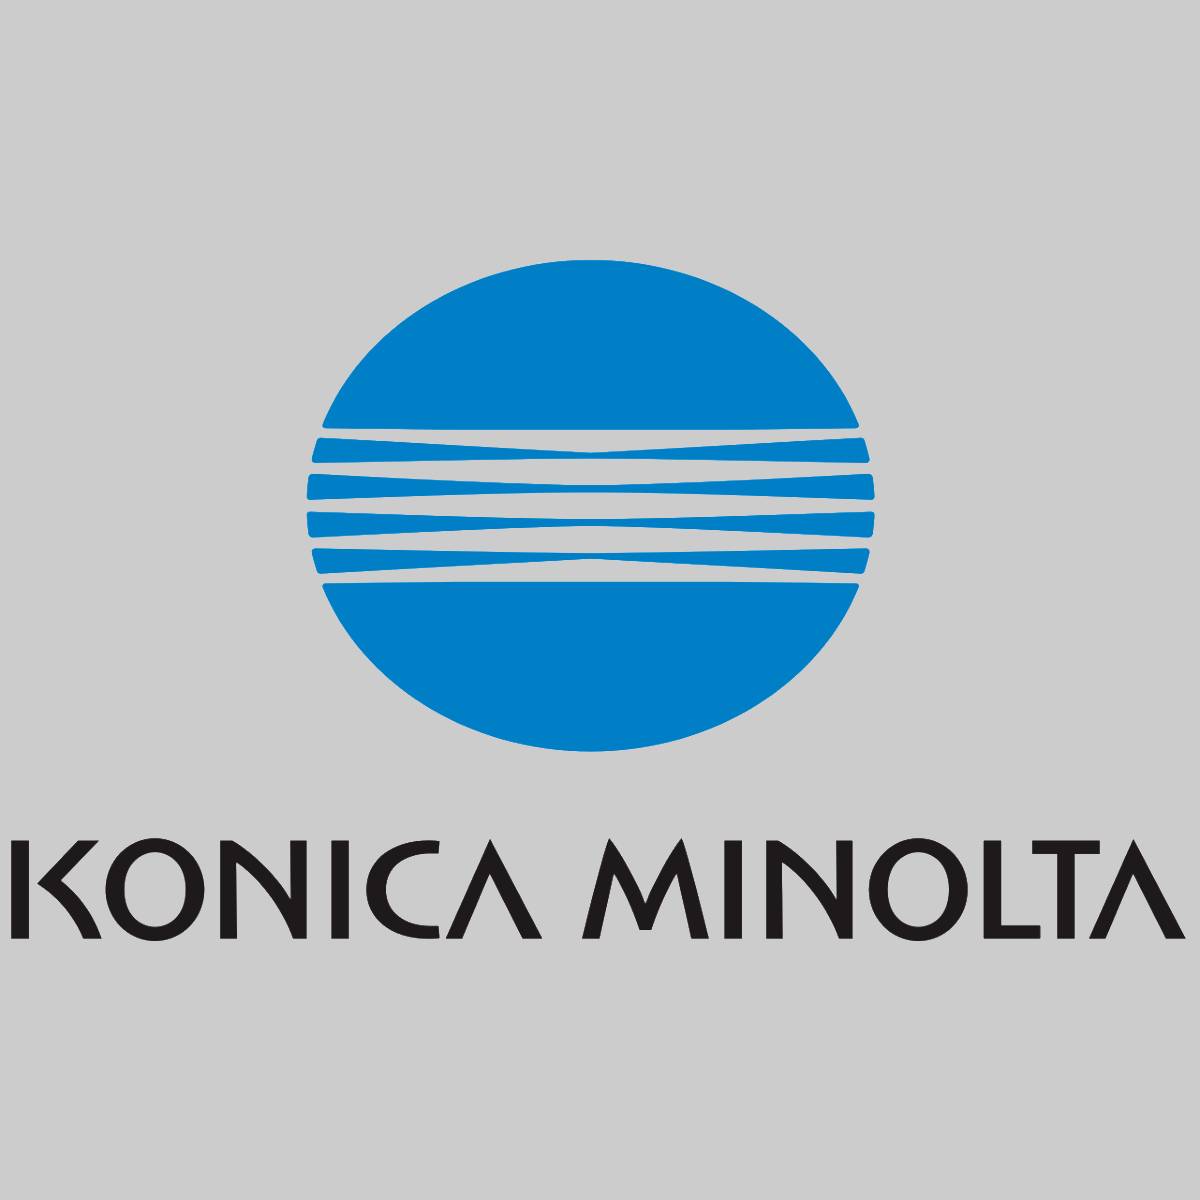 "Original Konica Minolta Schwarz (Black) Toner A0FN022 für PagePro 4600 4650 Ser